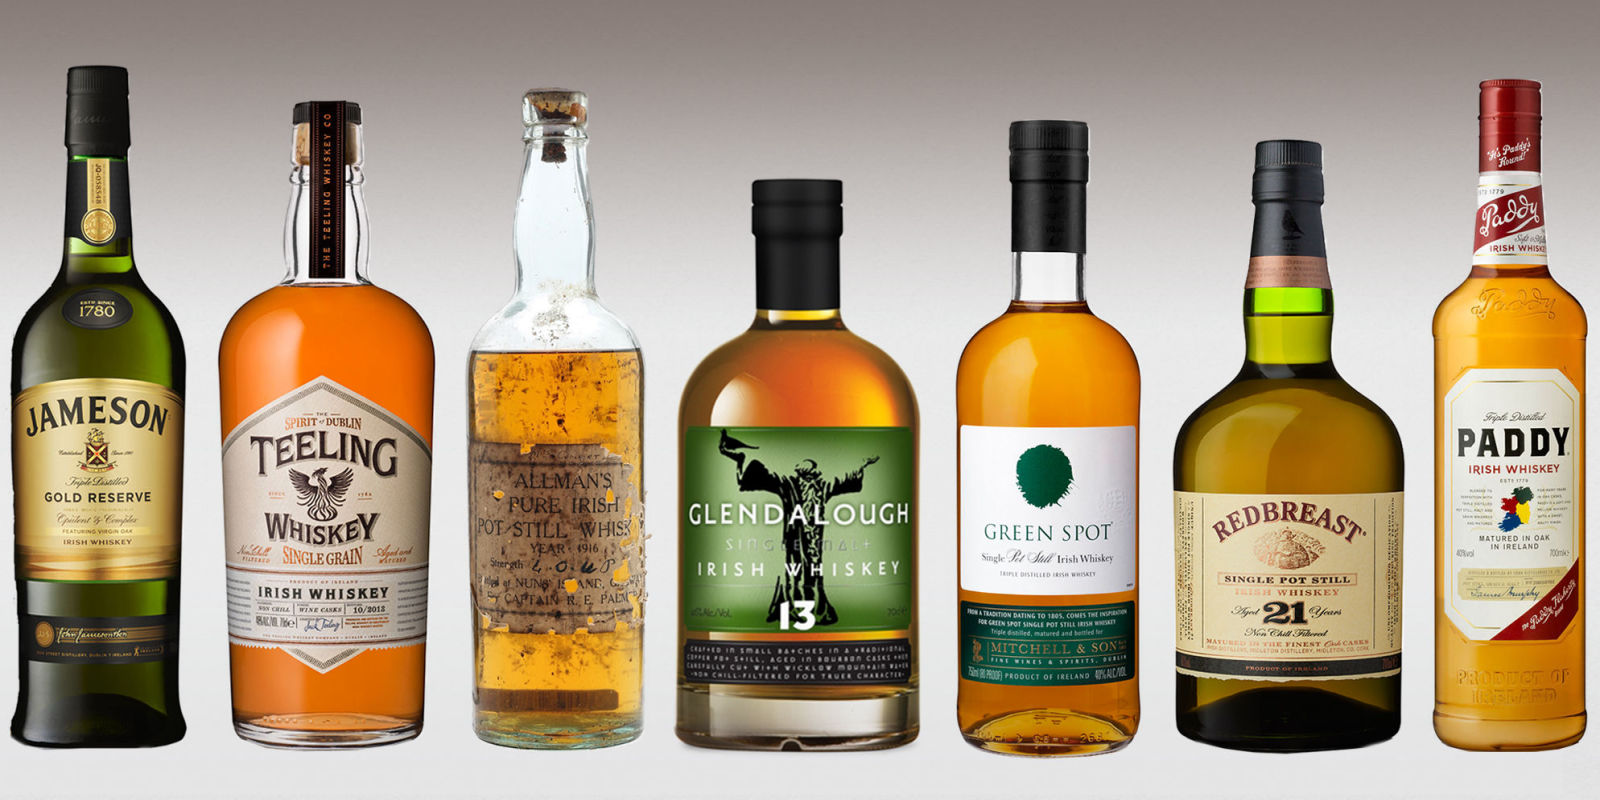 11 Best Irish Whiskey Brands of 2016